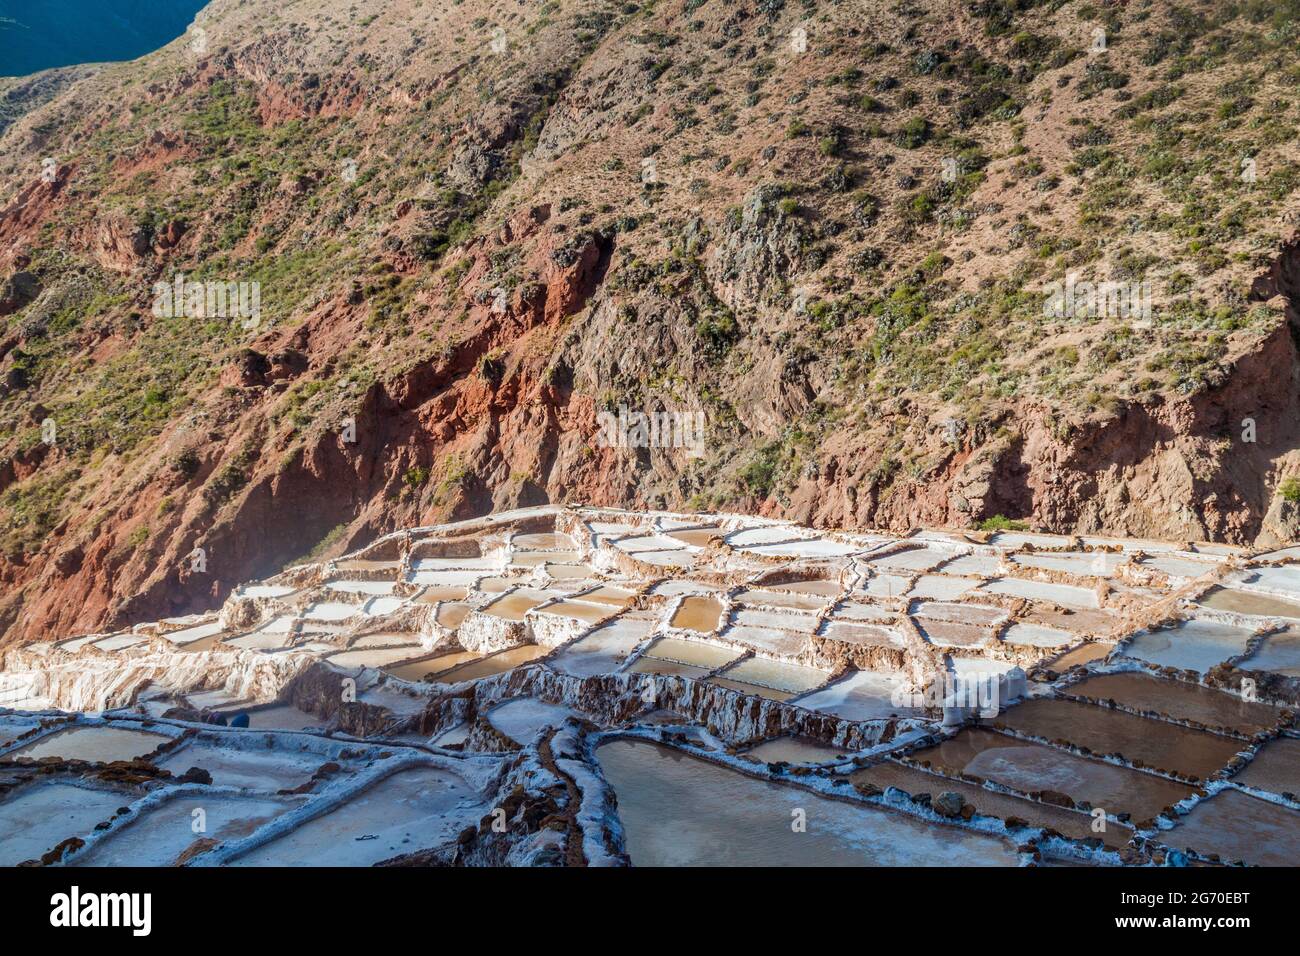 Casse di estrazione del sale (Salinas) nella Valle Sacra di Incas, Perù Foto Stock